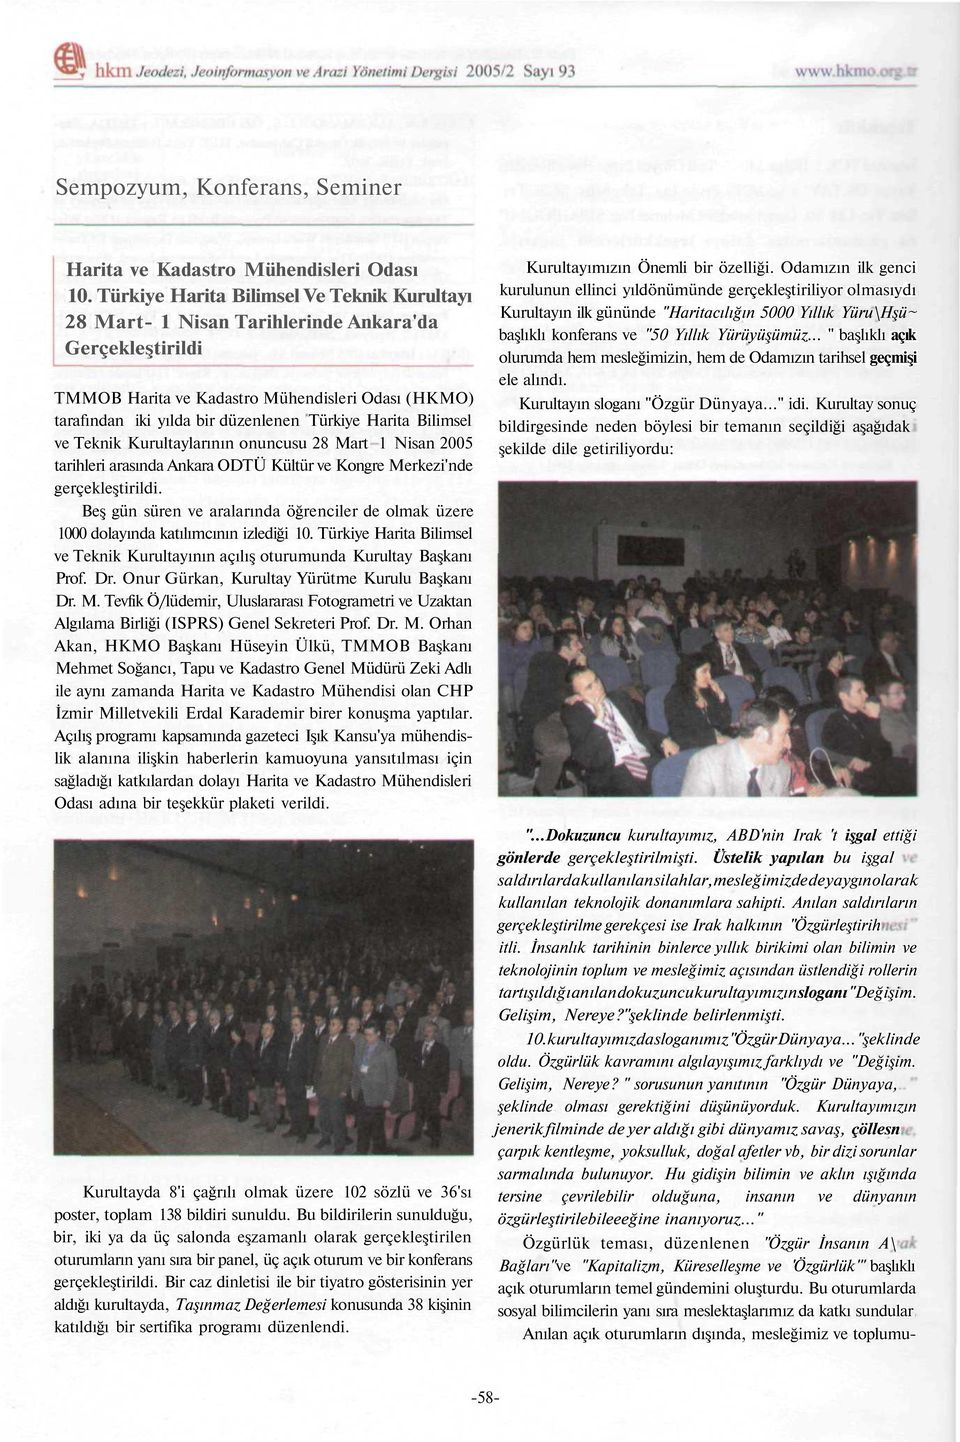 Harita Bilimsel ve Teknik Kurultaylarının onuncusu 28 Mart 1 Nisan 2005 tarihleri arasında Ankara ODTÜ Kültür ve Kongre Merkezi'nde gerçekleştirildi.